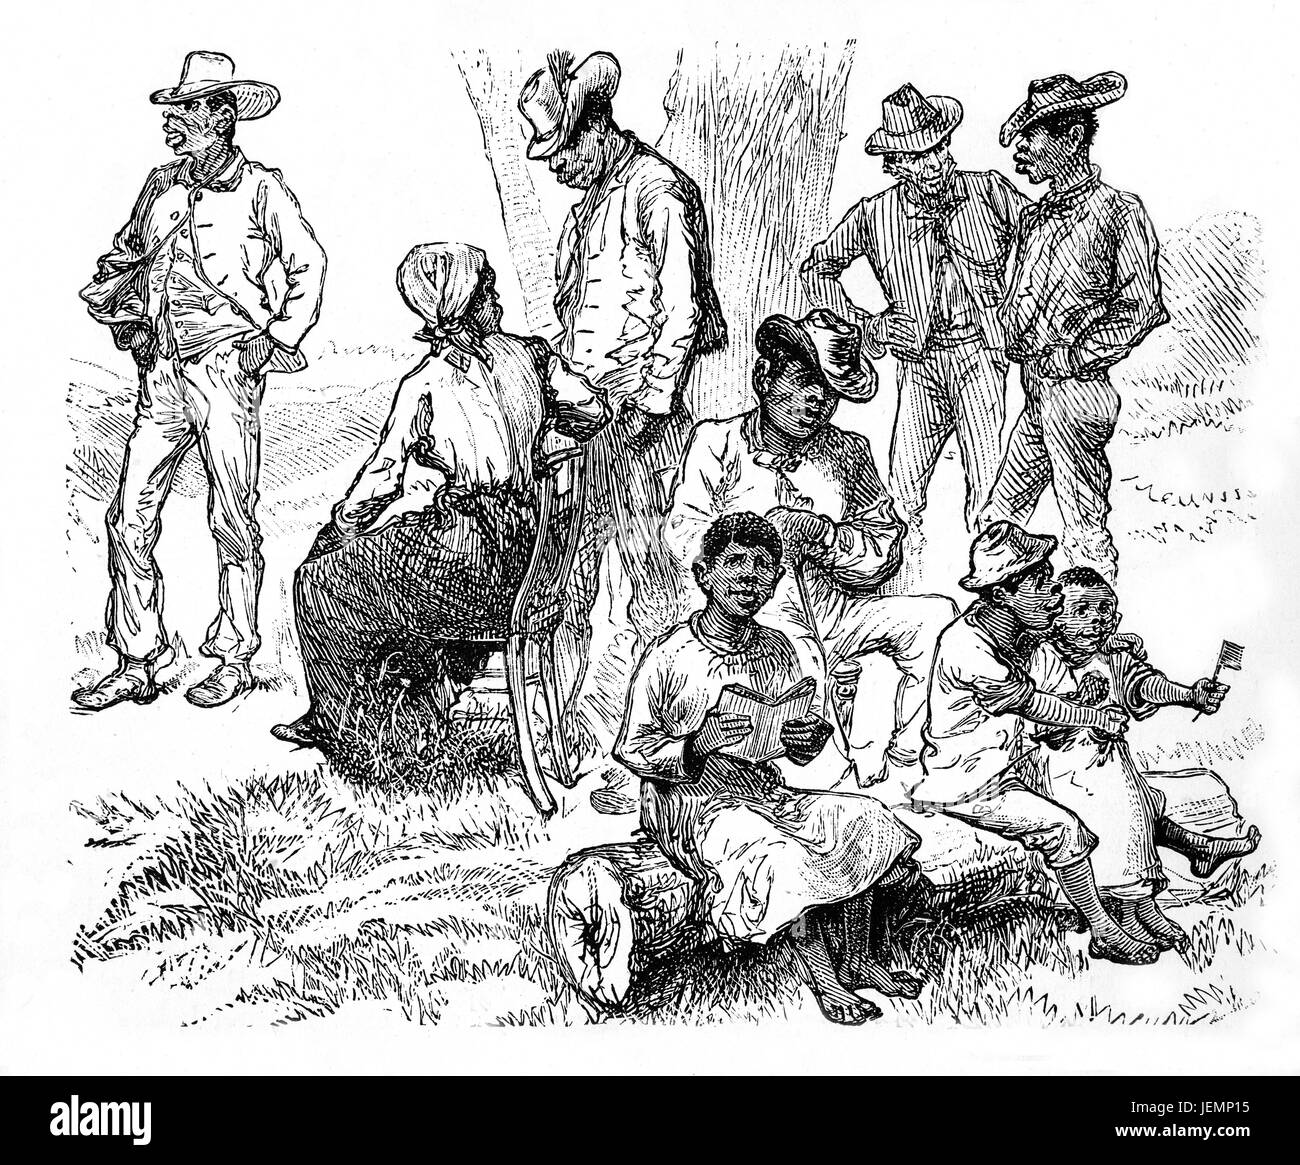 1879: Sonntagnachmittag für neu angekommene schwarz "Zuwanderer" in Richmond, Virginia, nach North Carolina Emigration Vereinigte Staaten von Amerika. Stockfoto